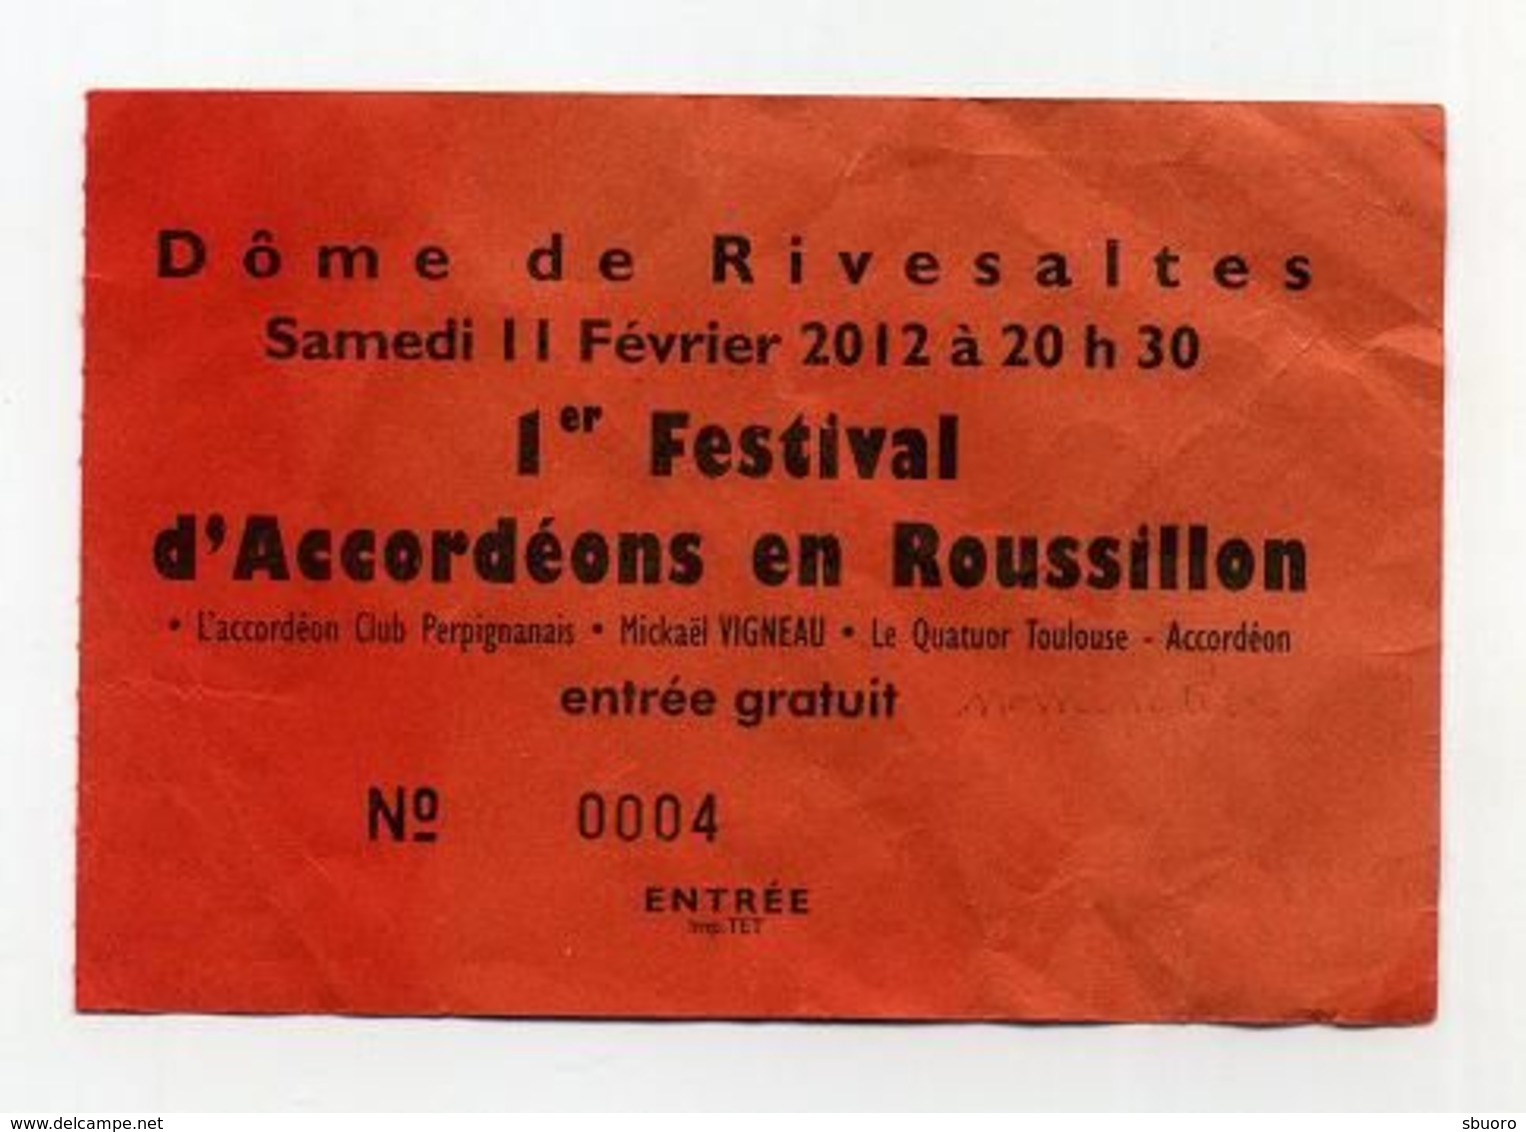 Premier Festival D'accordéons En Roussillon - Dôme De Rivesaltes - Février 2012 - Accordion Bayan Vigneau - Concert Tickets